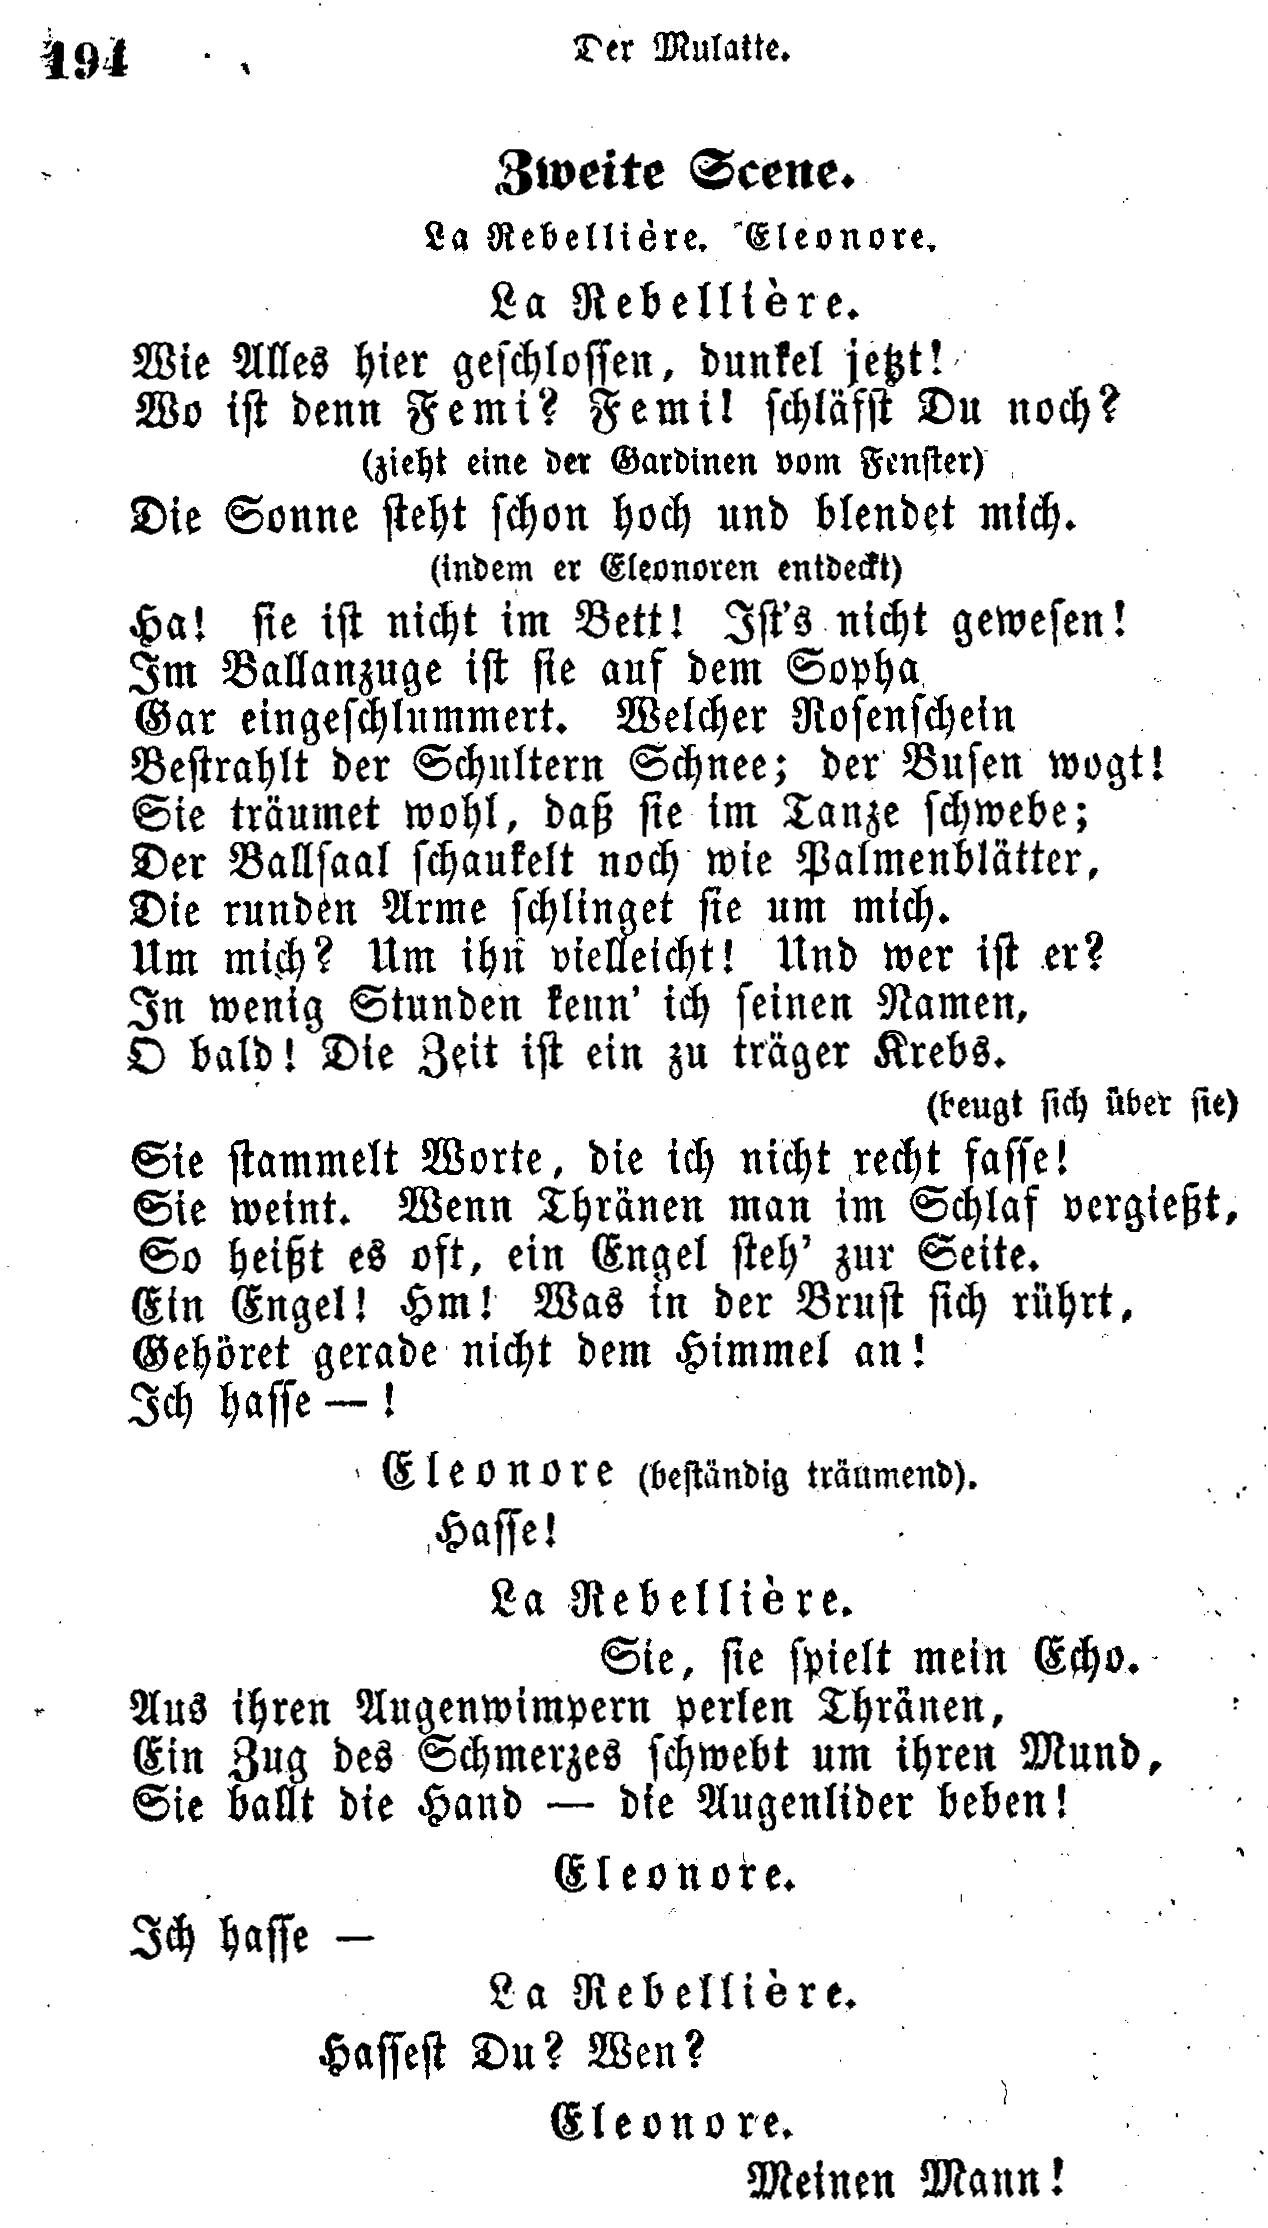 H.C. Andersen: Der Mulatte page  194